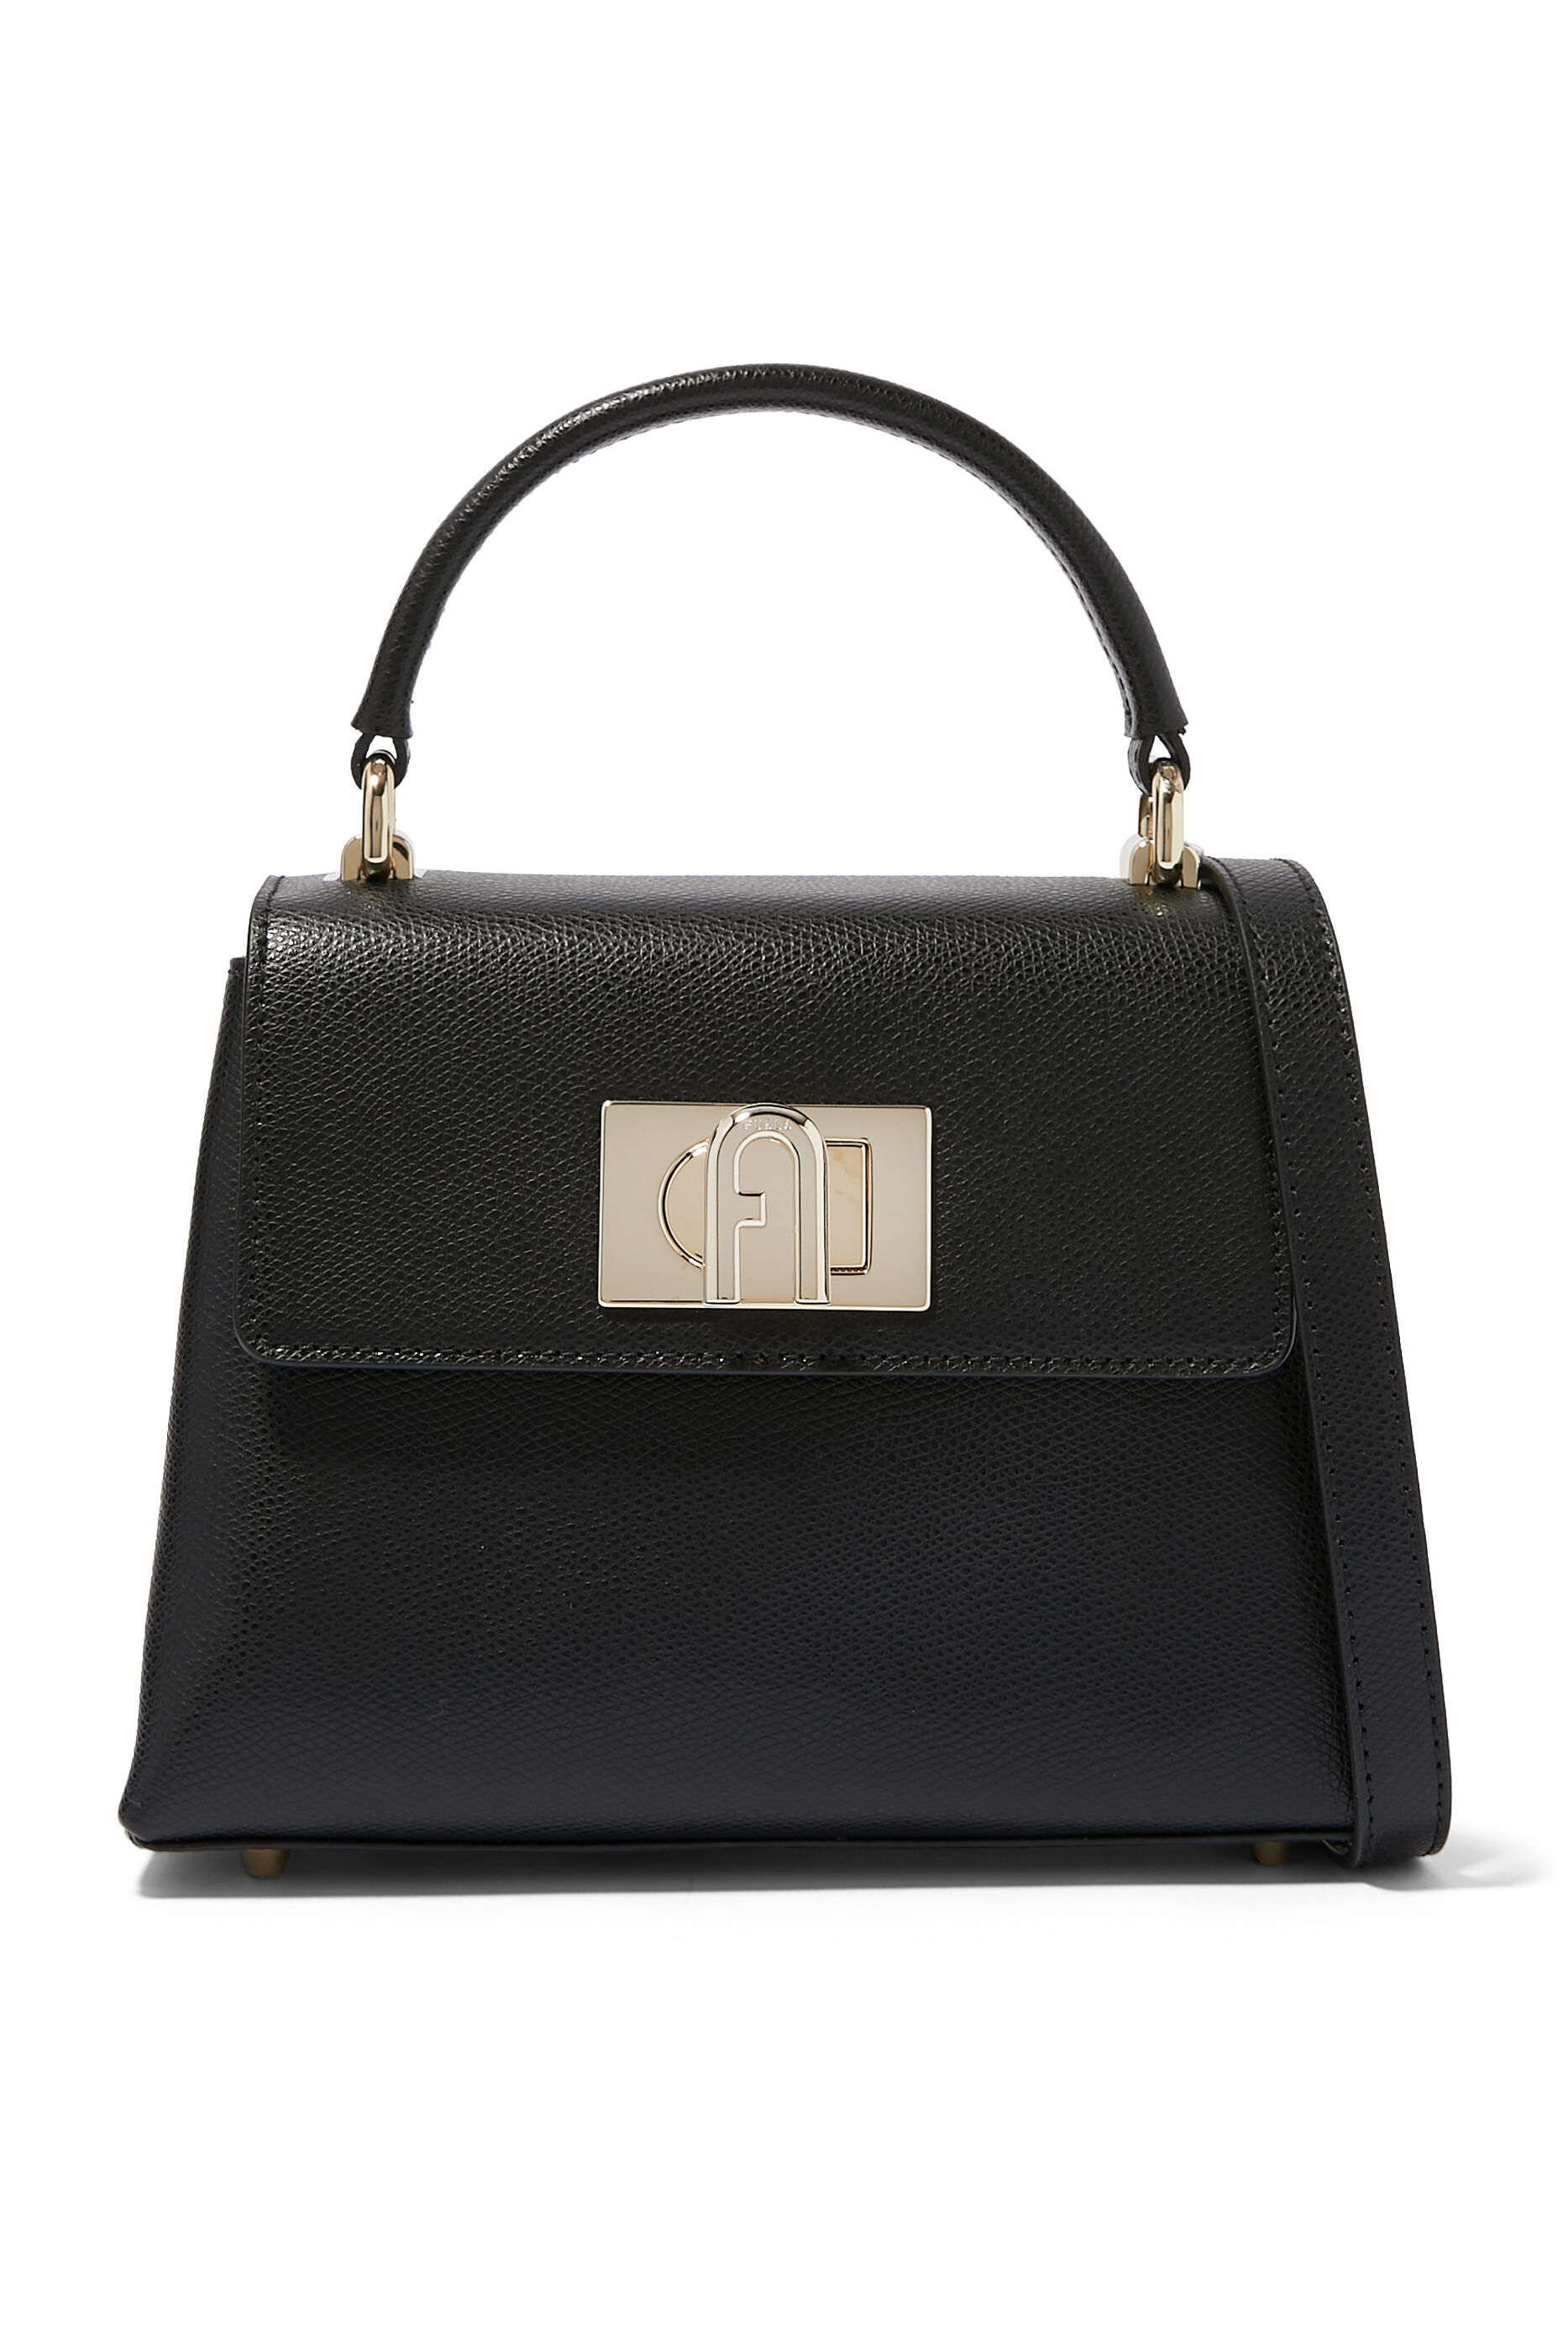 Buy Leather Sling Bags Online | Branded Sling Bags UAE – NAPPA DORI